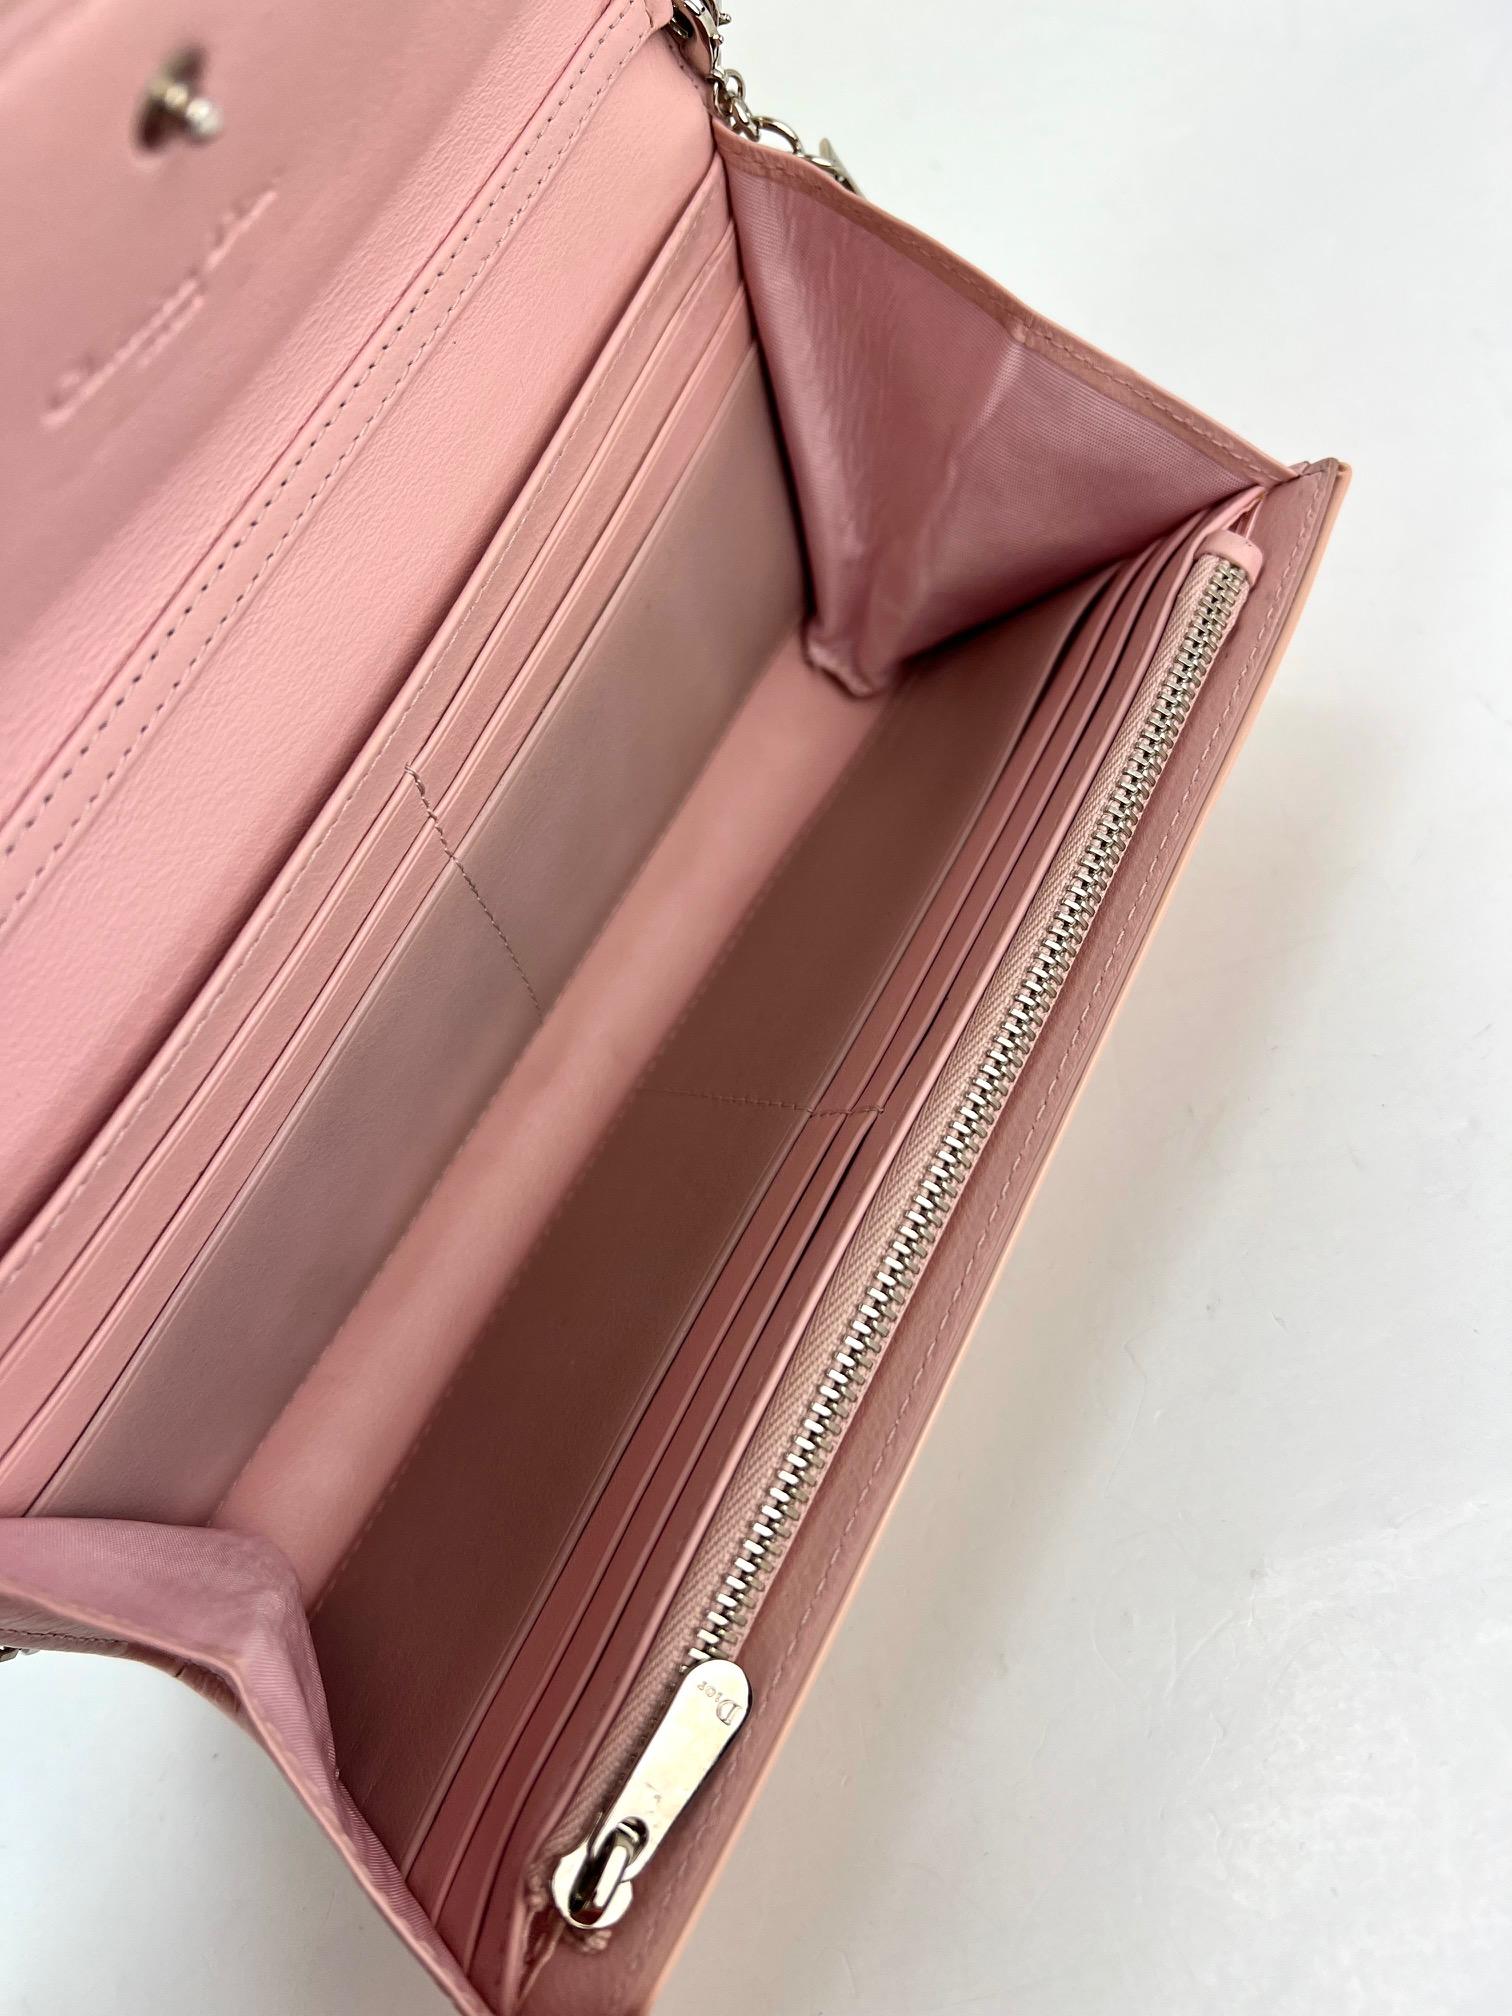 Pochette Lady Dior rose portefeuille cannage en cuir verni sur chaîne  6